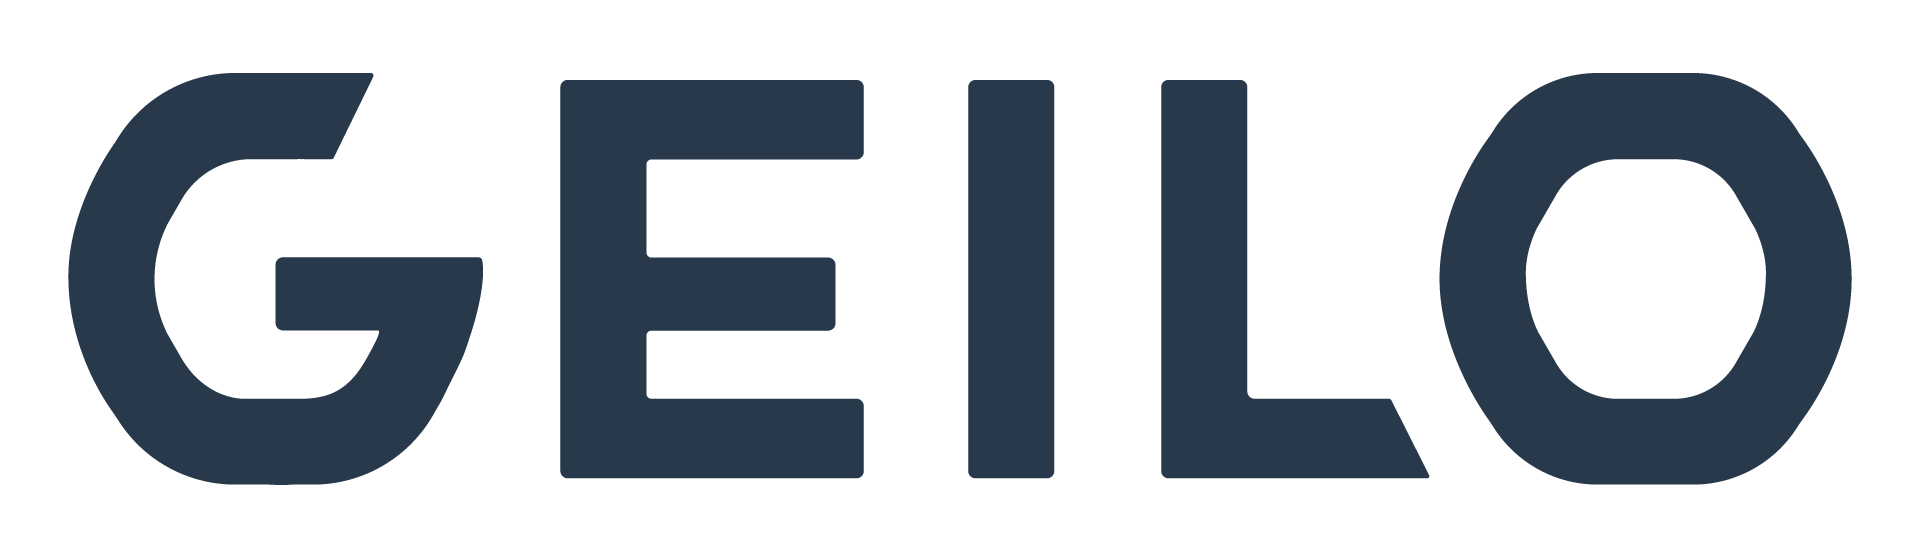 Logo geilo